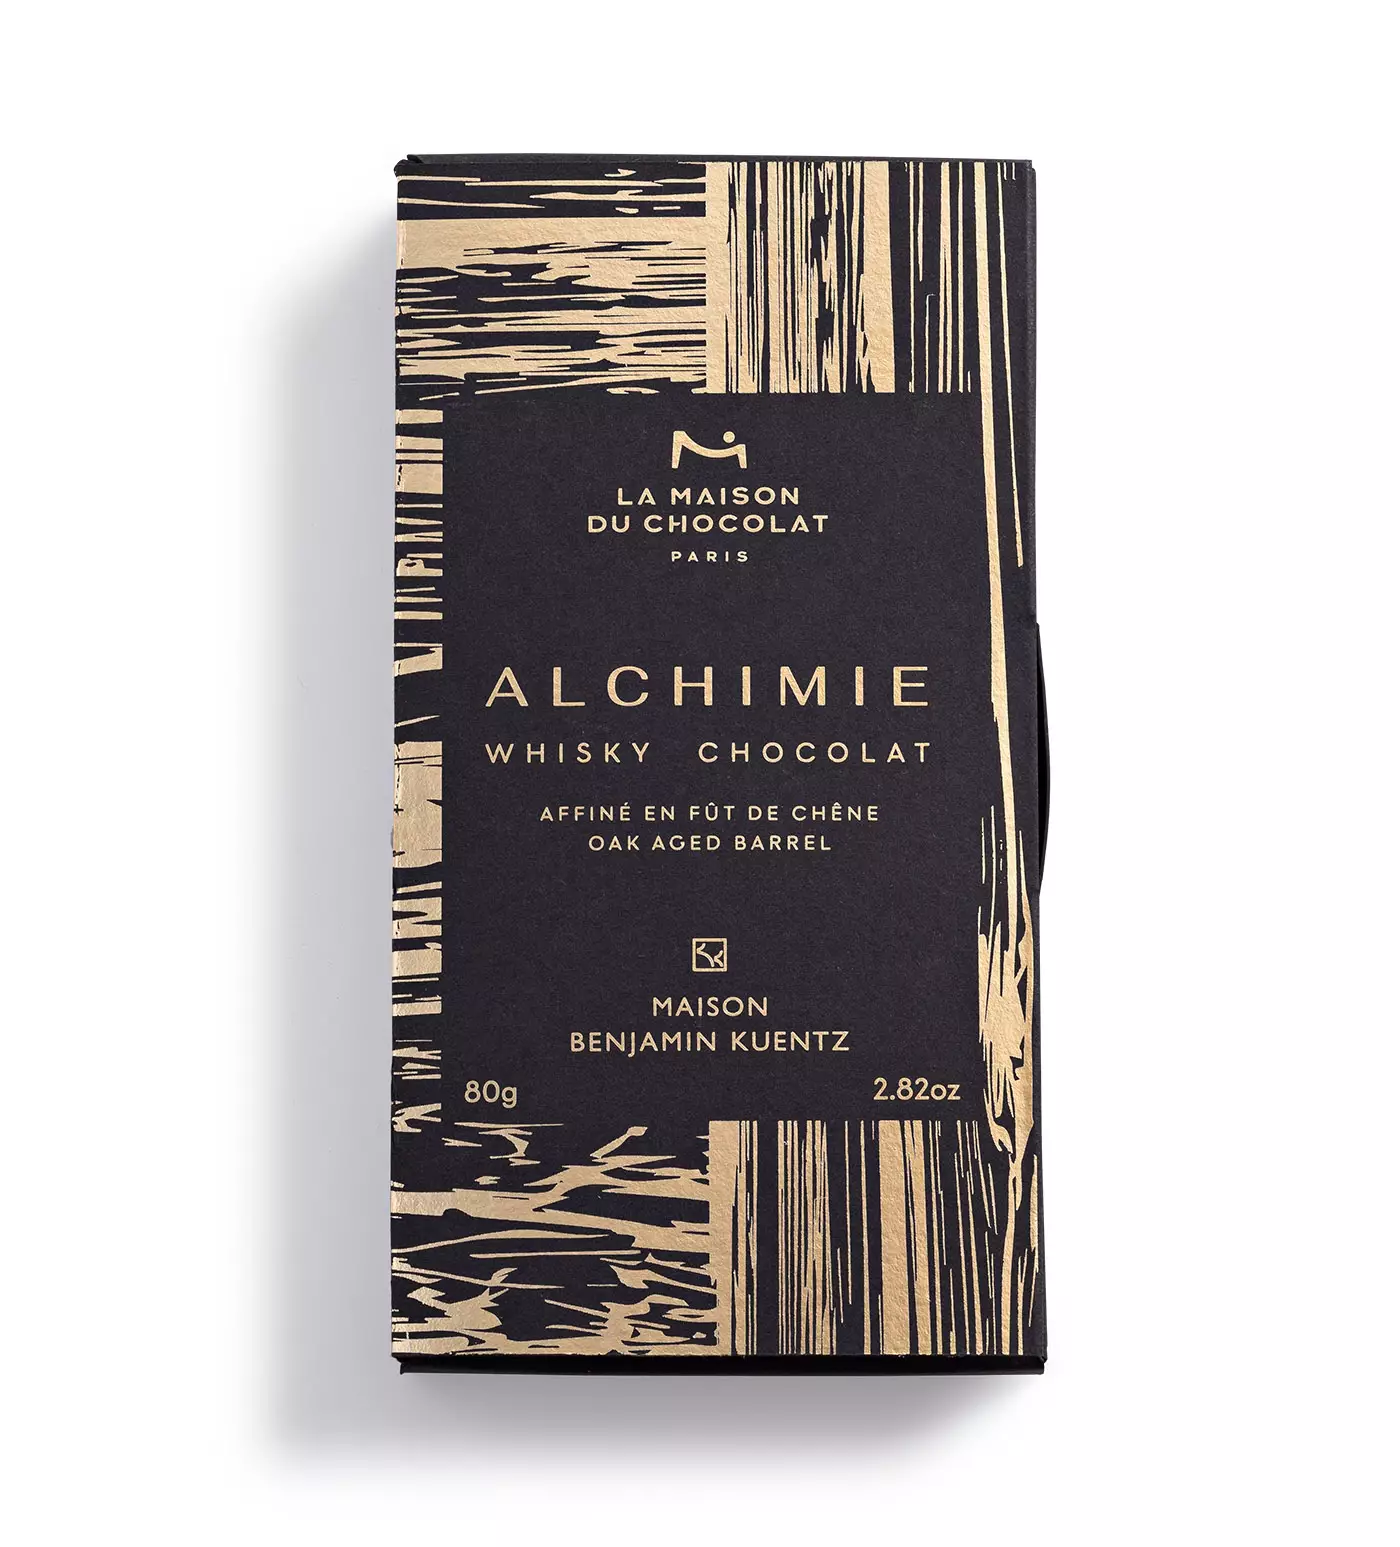 La tablette d'alchimie aromatisée au whisky par La Maison du Chocolat et la Maison Benjamin Kuentz